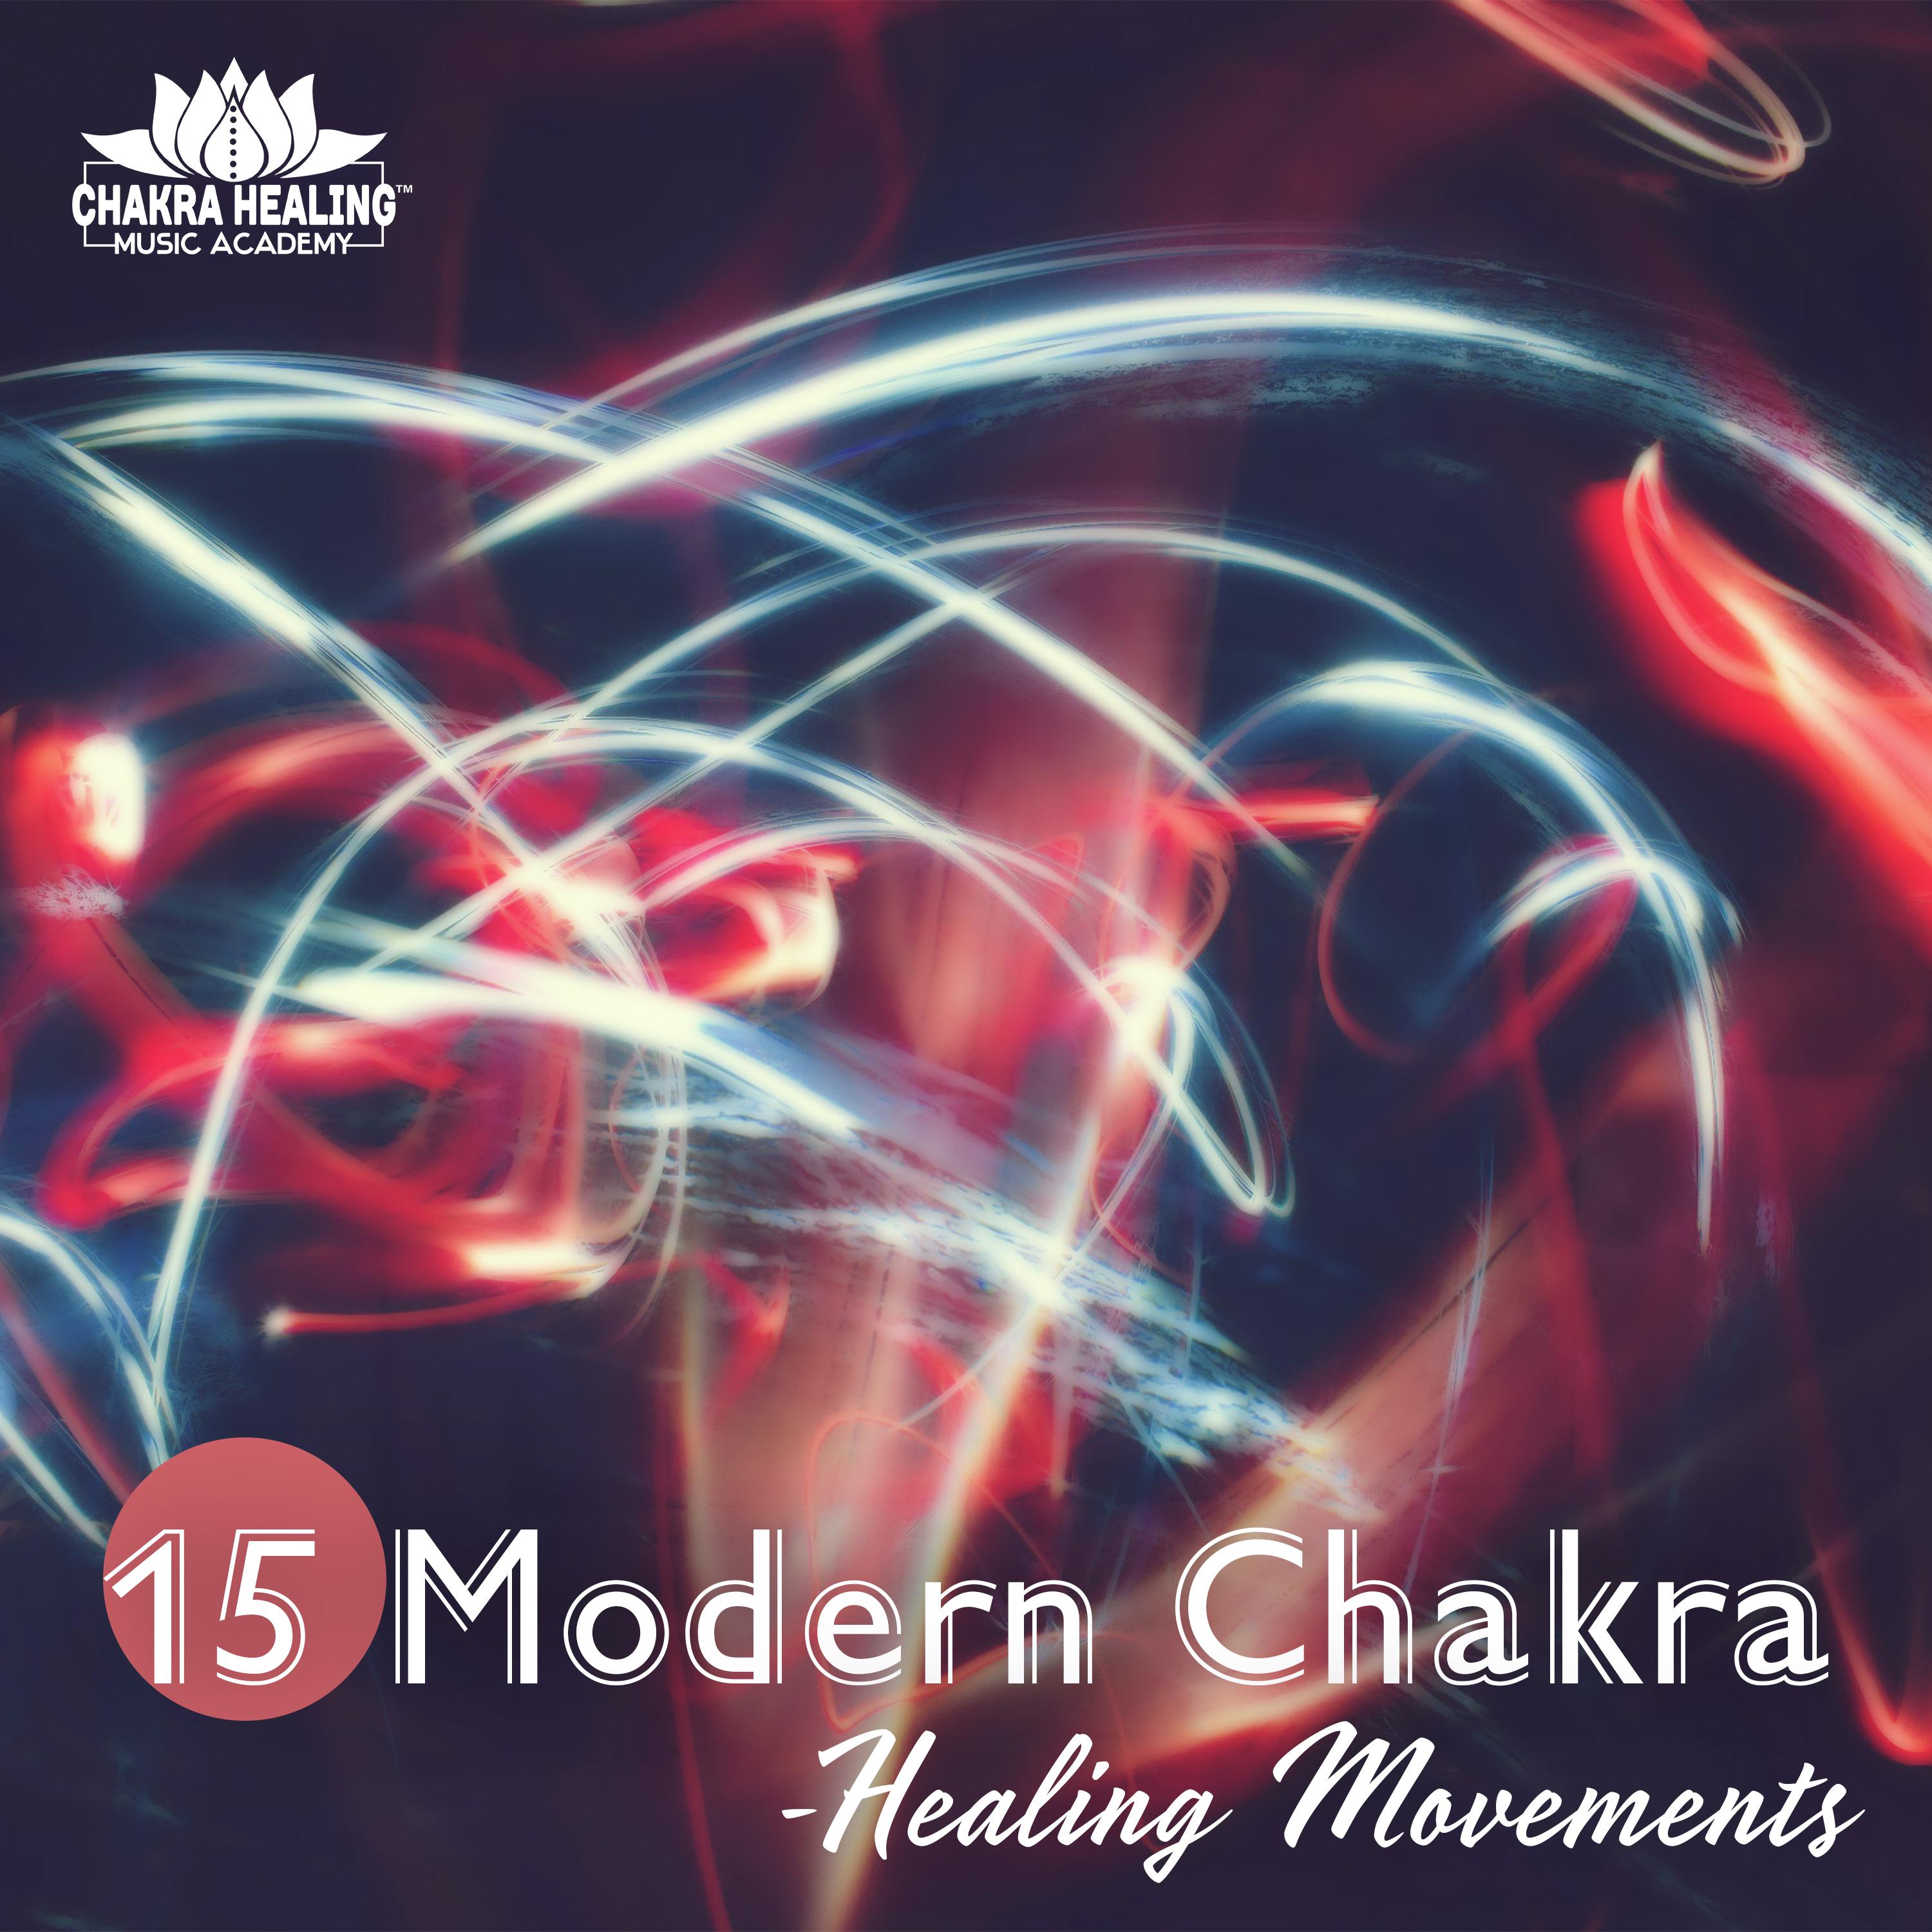 15 Modern Chakra – Healing Movements